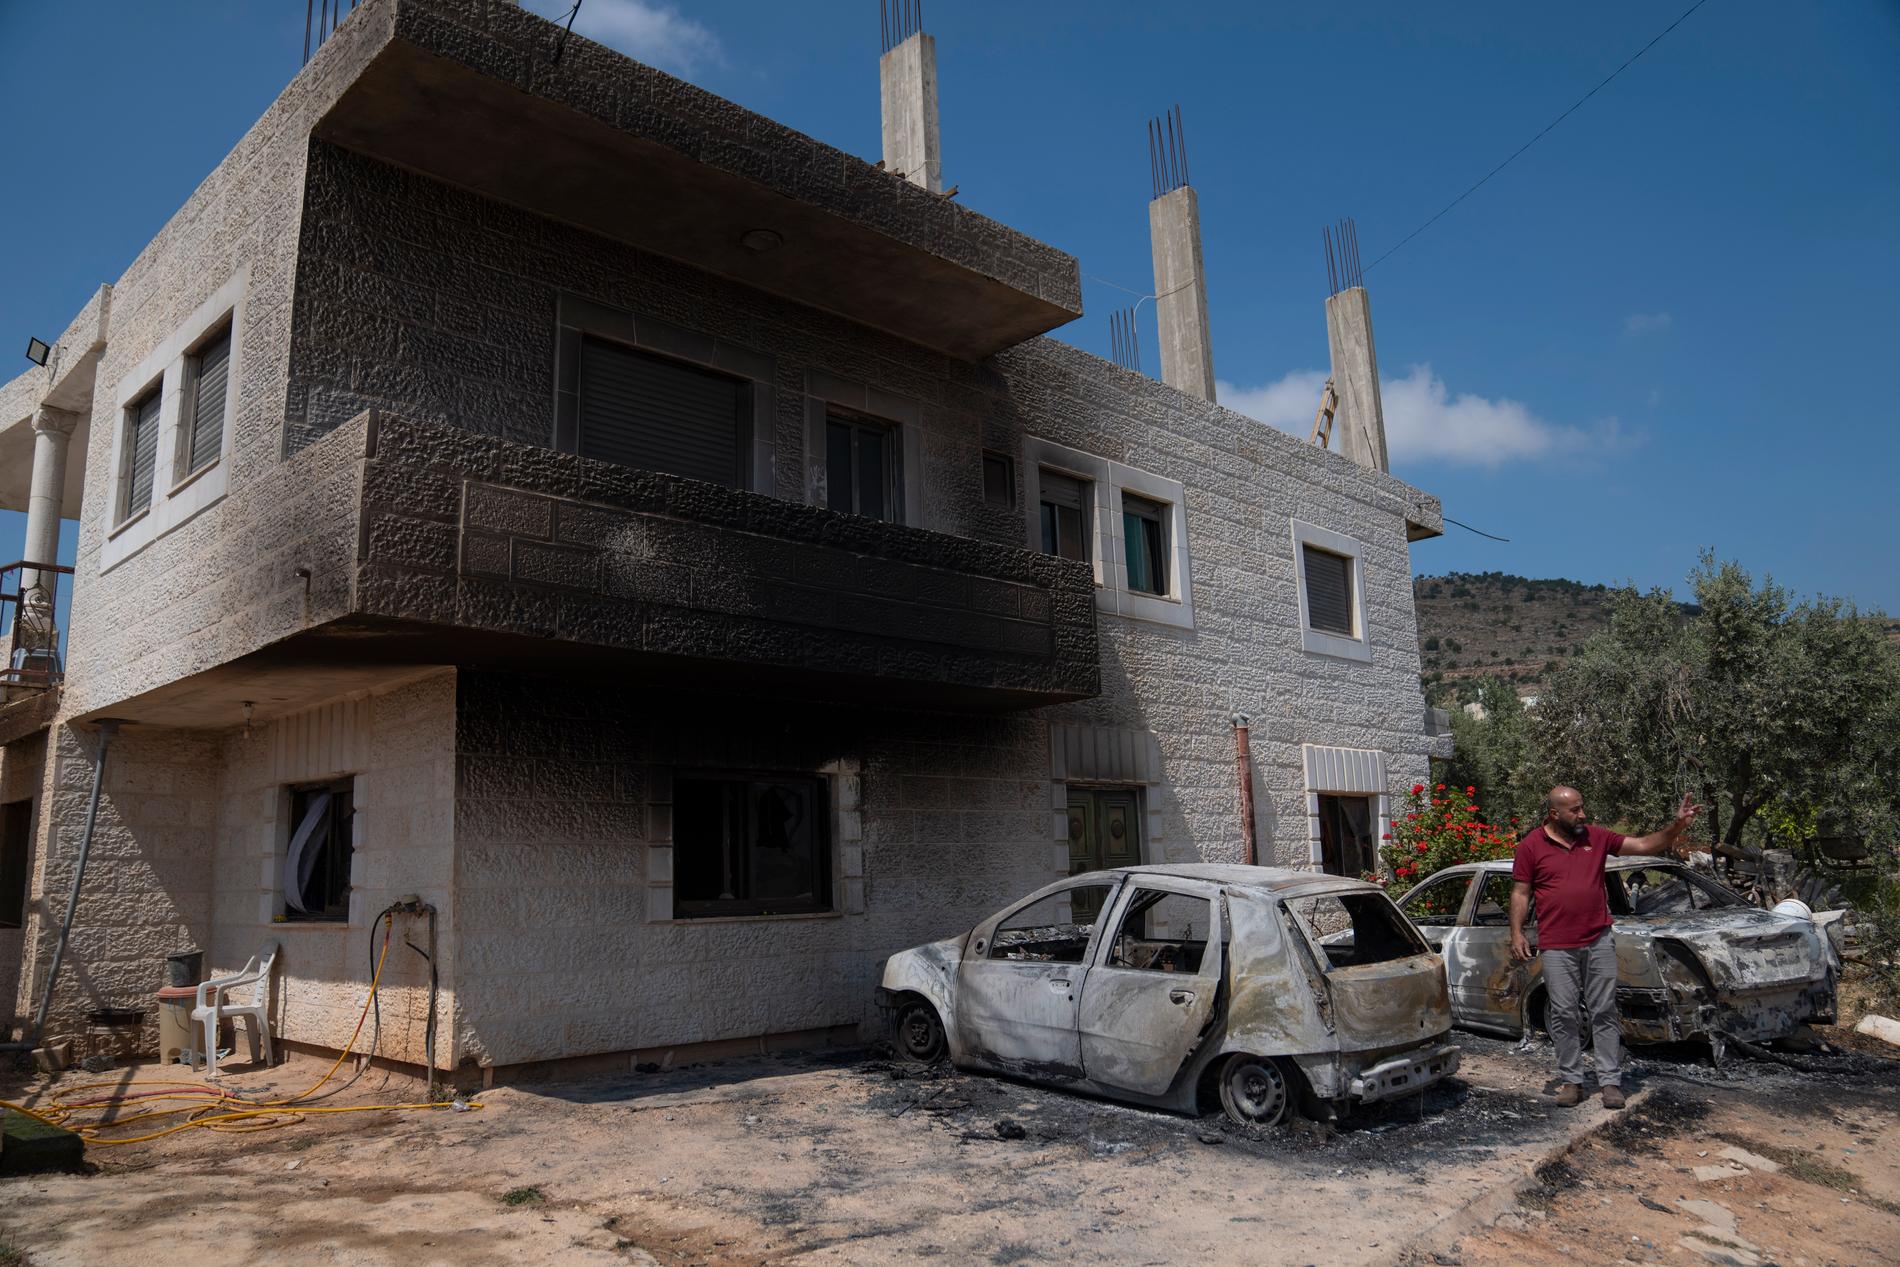 Akef Abu Alia inspekterar förödelsen efter att hans hus och bilar satts i brand i byn al-Mughayyir på Västbanken tidigare i april.